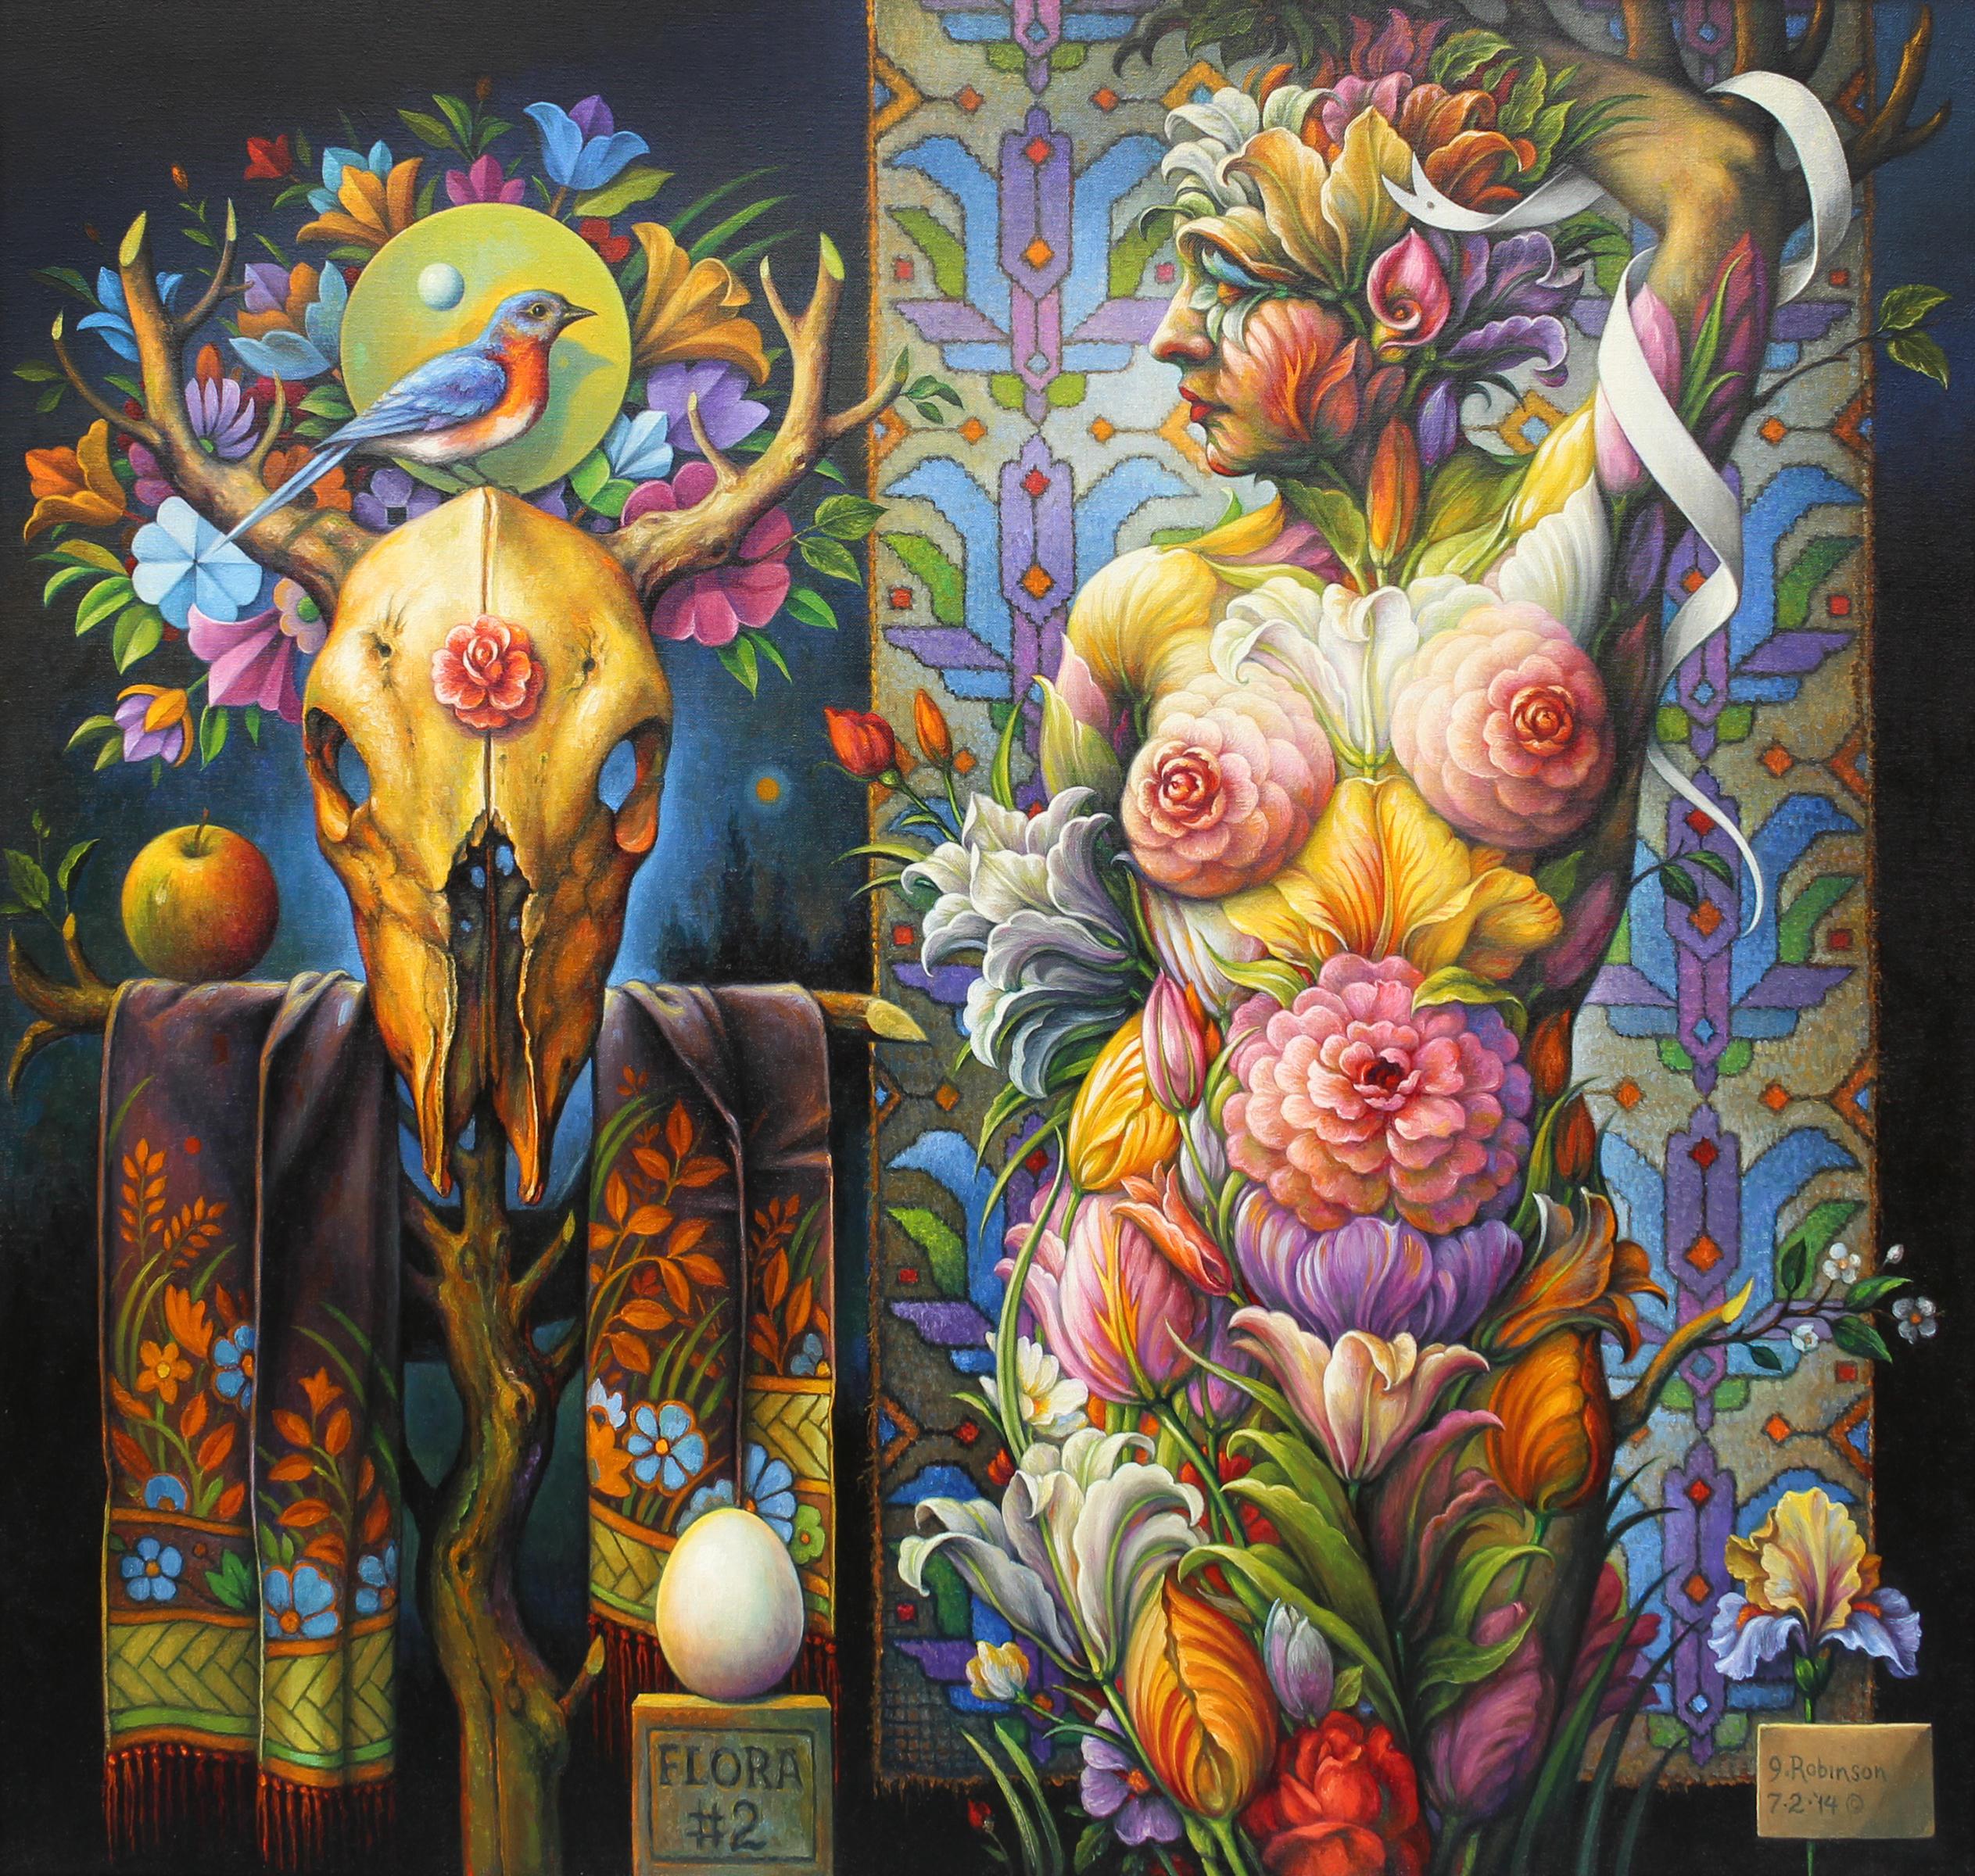 Guy Robinson Nude Painting - "Flora #2" - Geometric Surrealist Painting - Nude - Arcimboldo